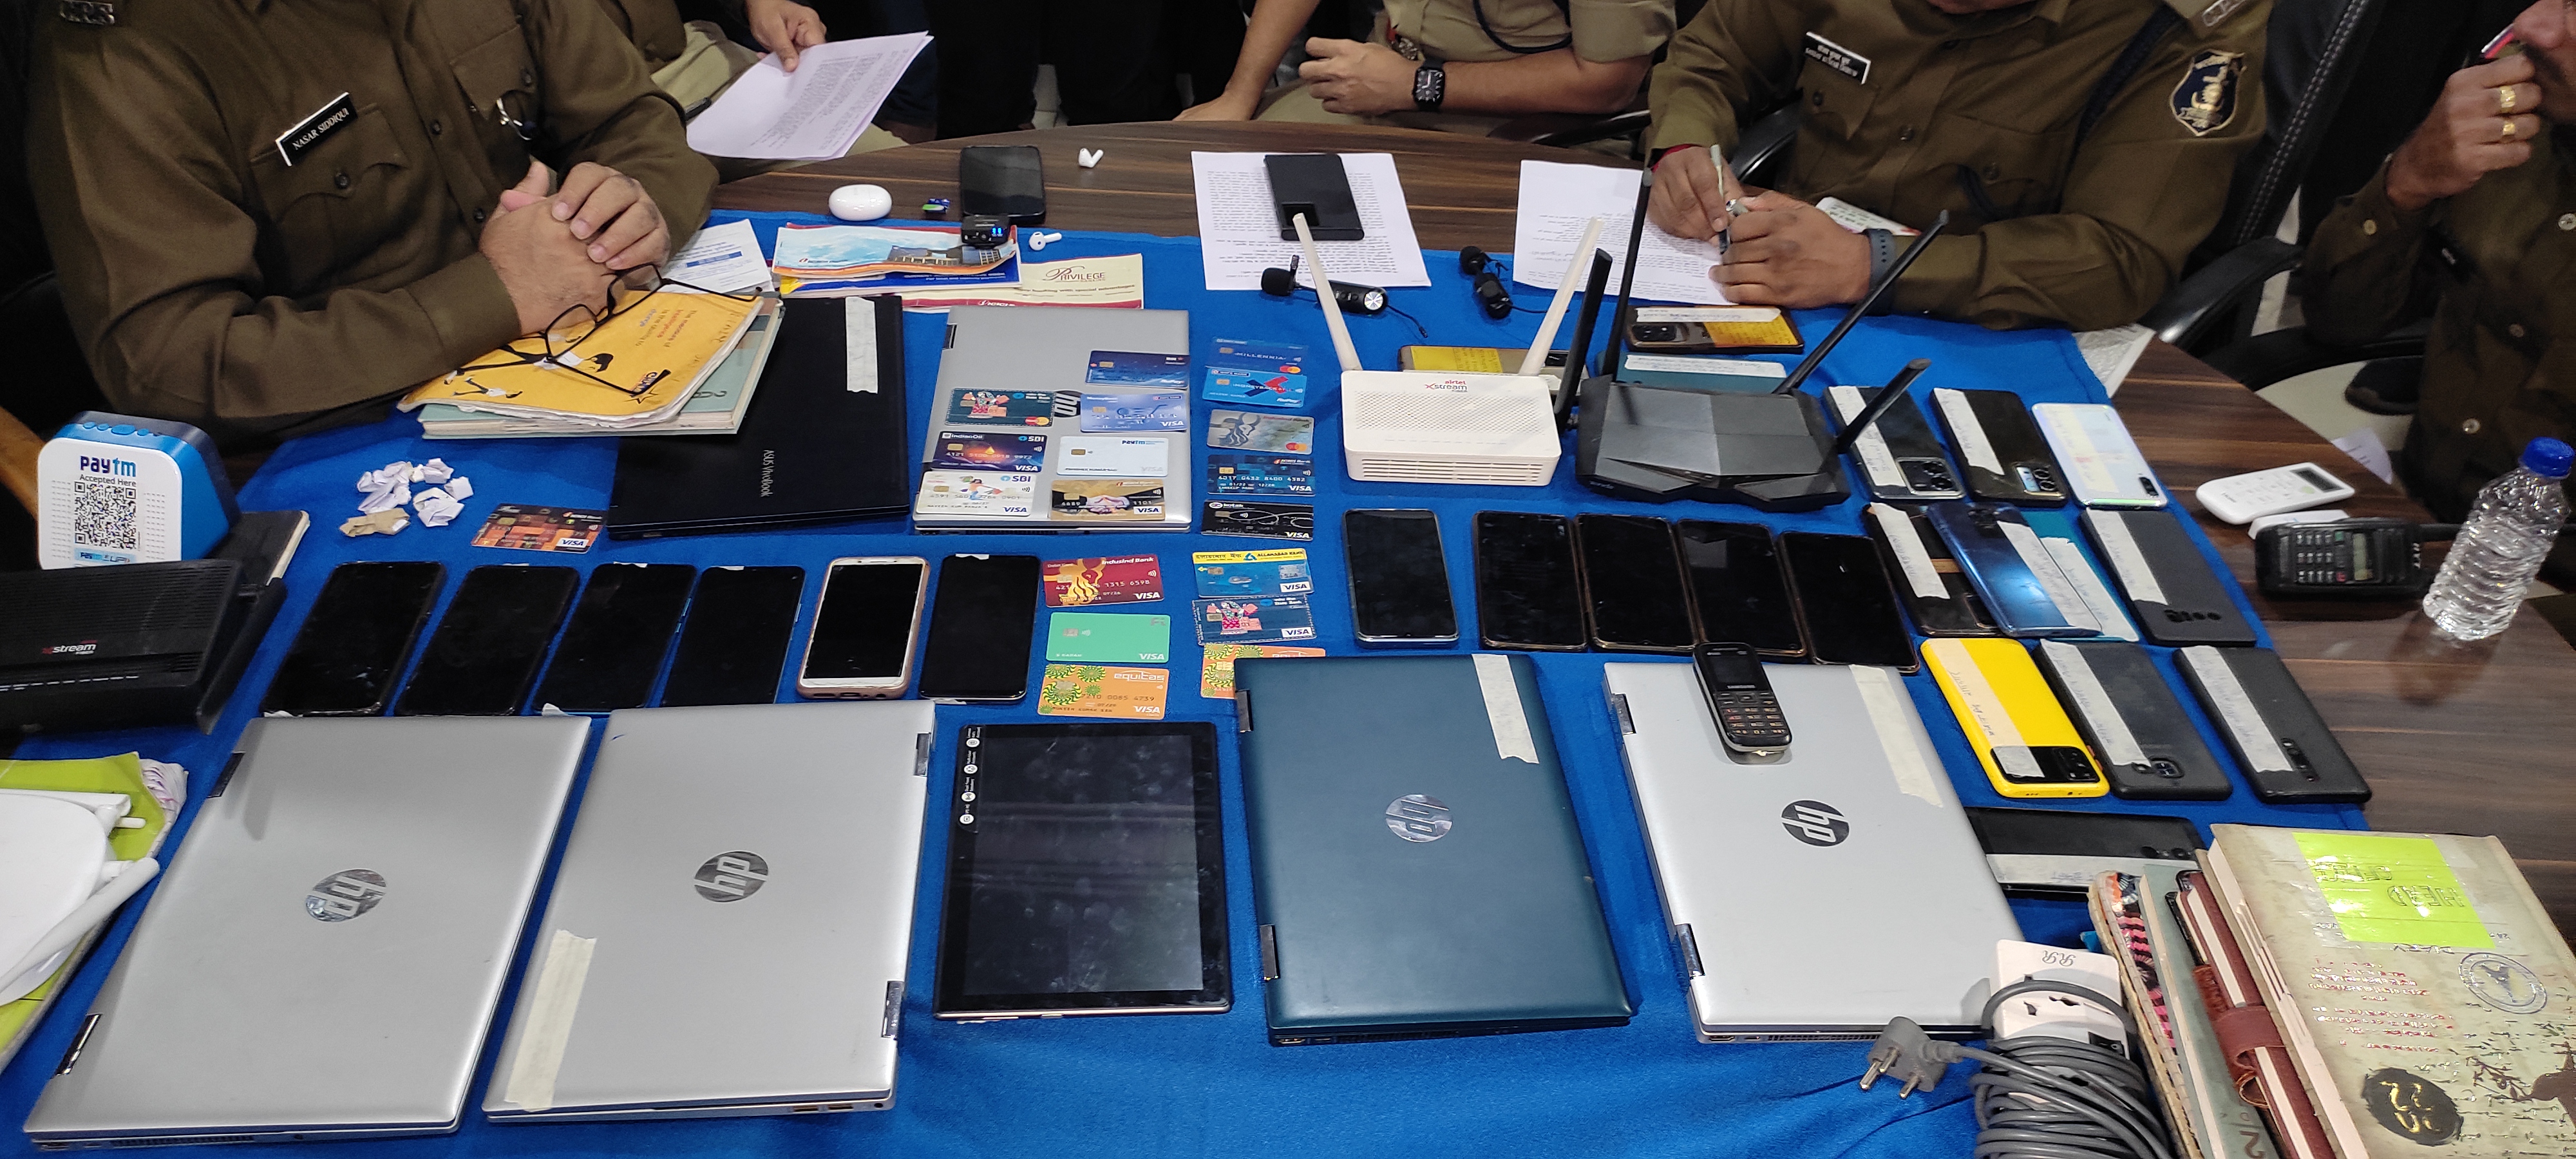 पुलिस ने जब्त किए मोबाइल और लैपटॉप